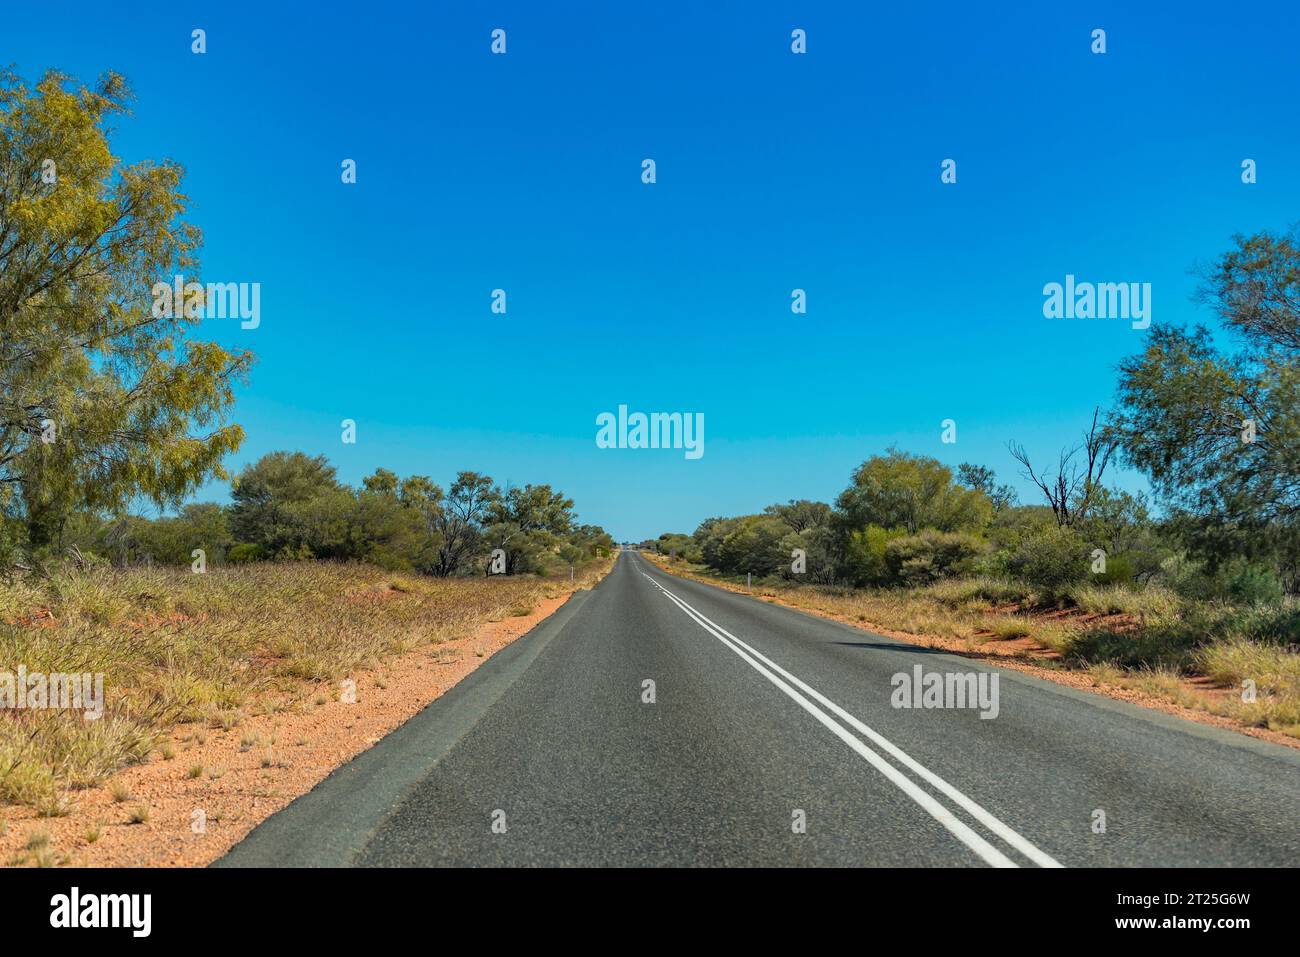 Hitzewolken und eine lange geradlinige Strecke des Lasseter Highway zwischen Alice Springs (Mparntwe) und Kings Canyon im Northern Territory von Australien Stockfoto